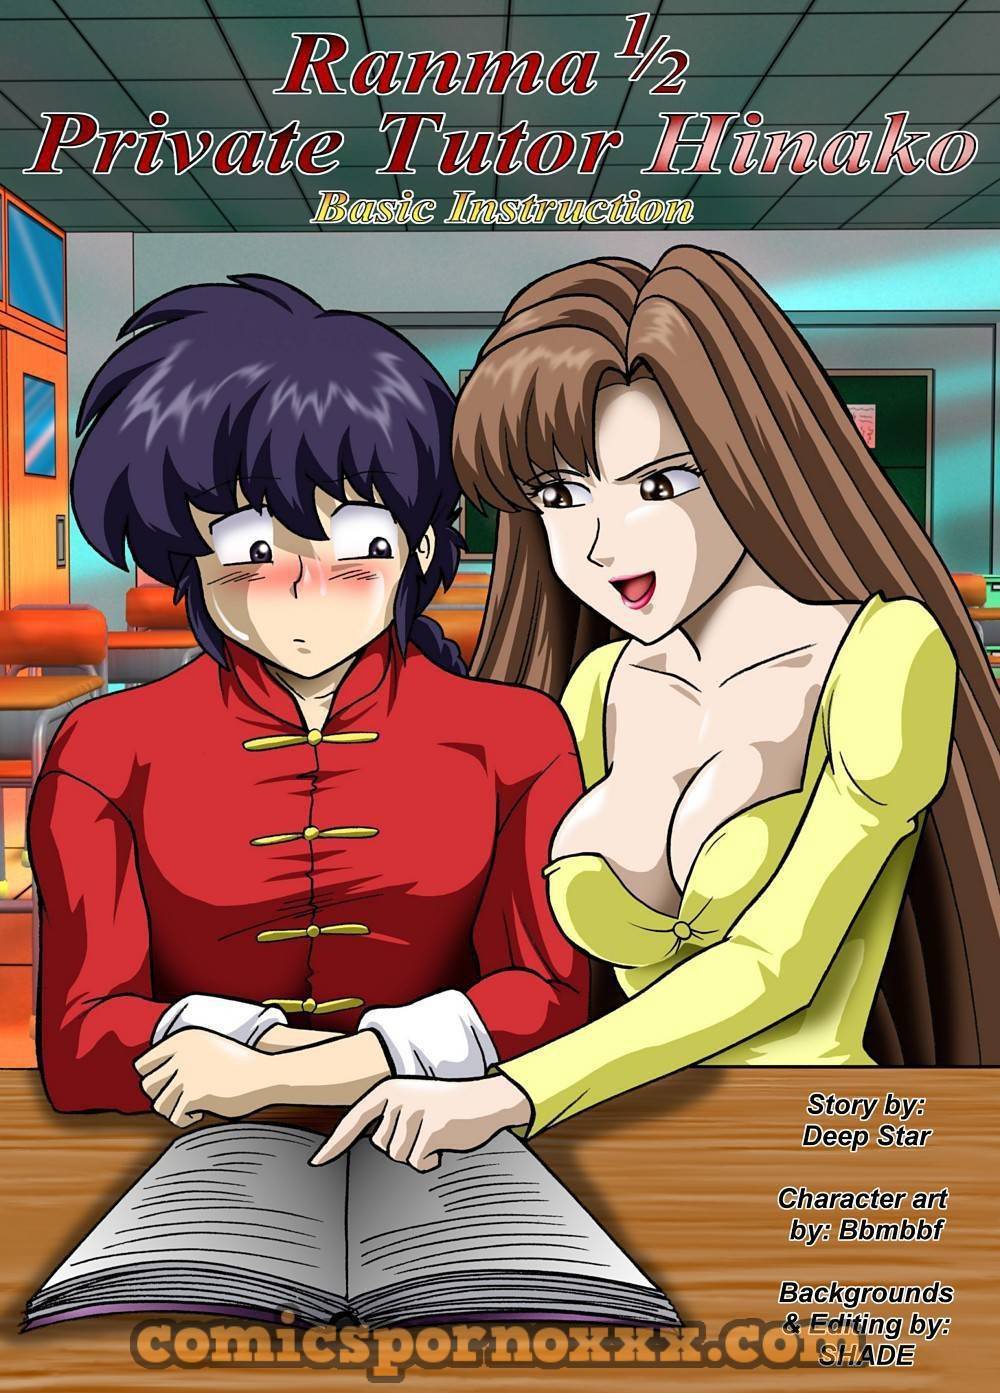 Ranma 1/2 Private Tutor Hinako - 1 - Comics Porno - Hentai Manga - Cartoon XXX